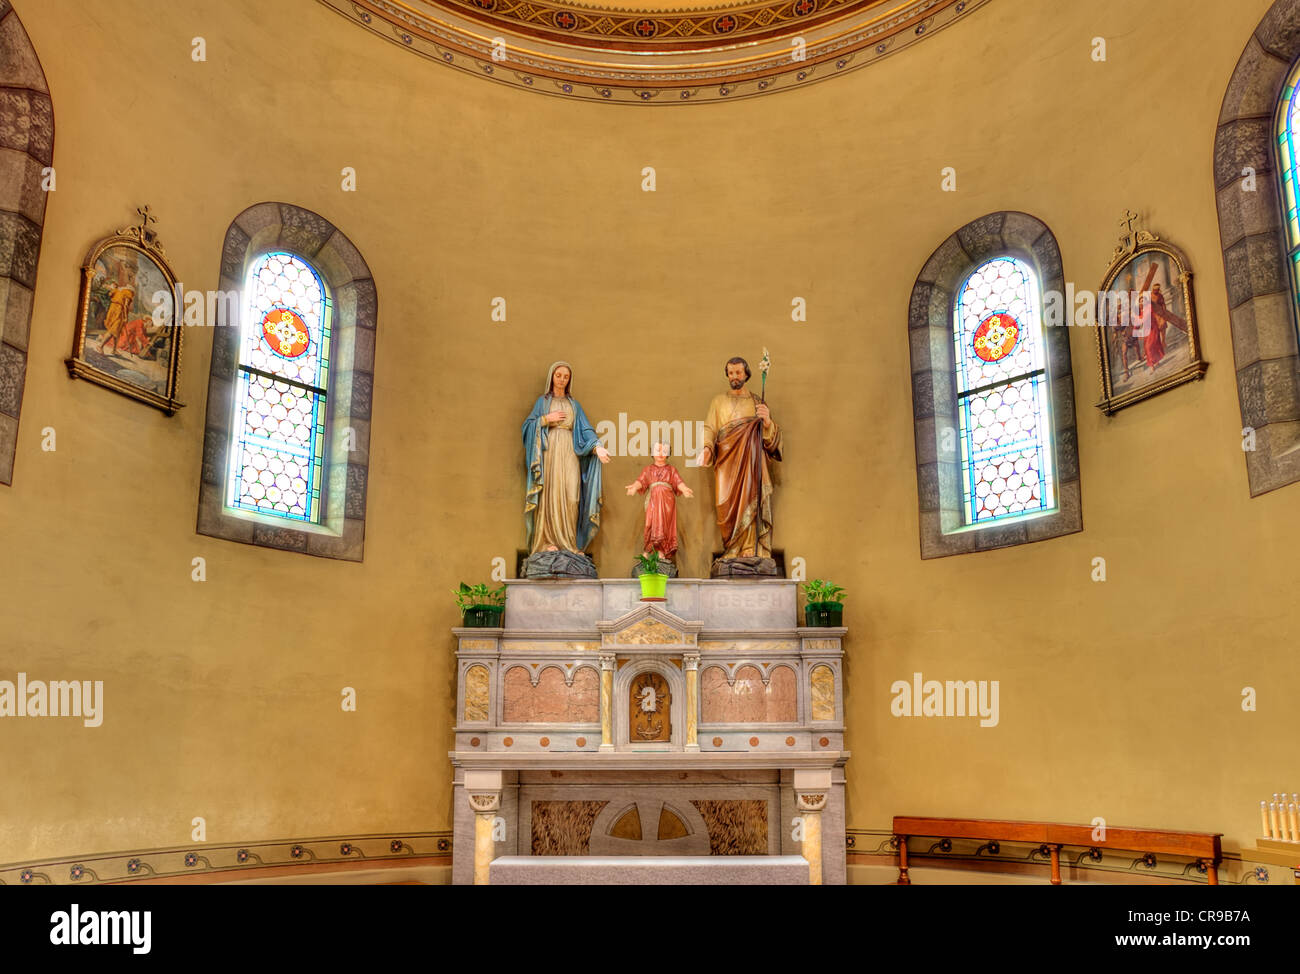 Statuen von Jesus, Mary und Joseph am Altar im Inneren der katholischen Kirche in Alba, Italien. Stockfoto